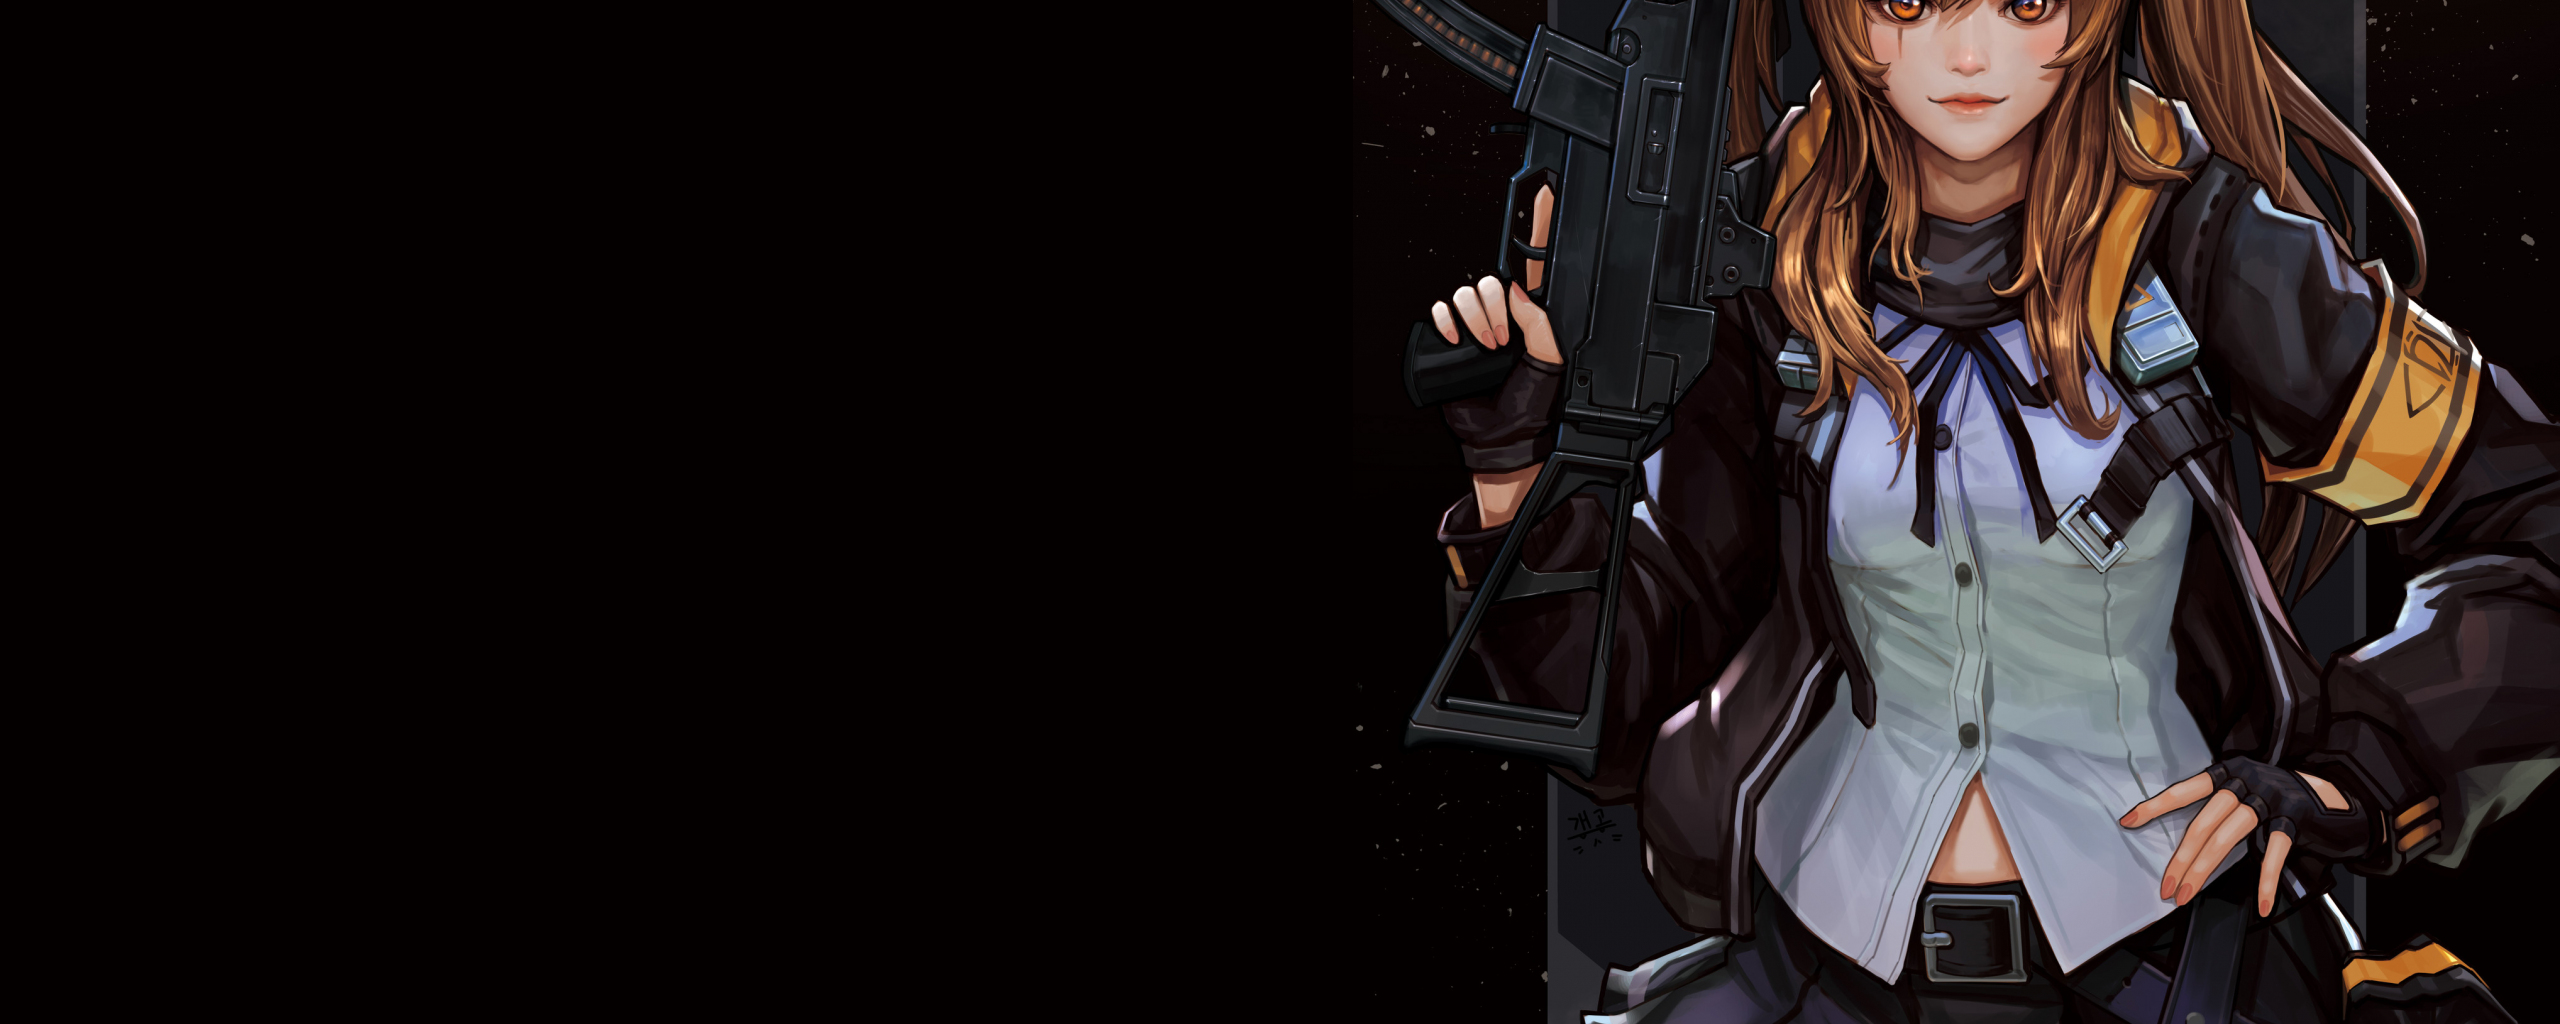 Desktop Wallpaper Anime Girl And Gun Girls Frontline 4k Hd Image Picture Background Eba9de